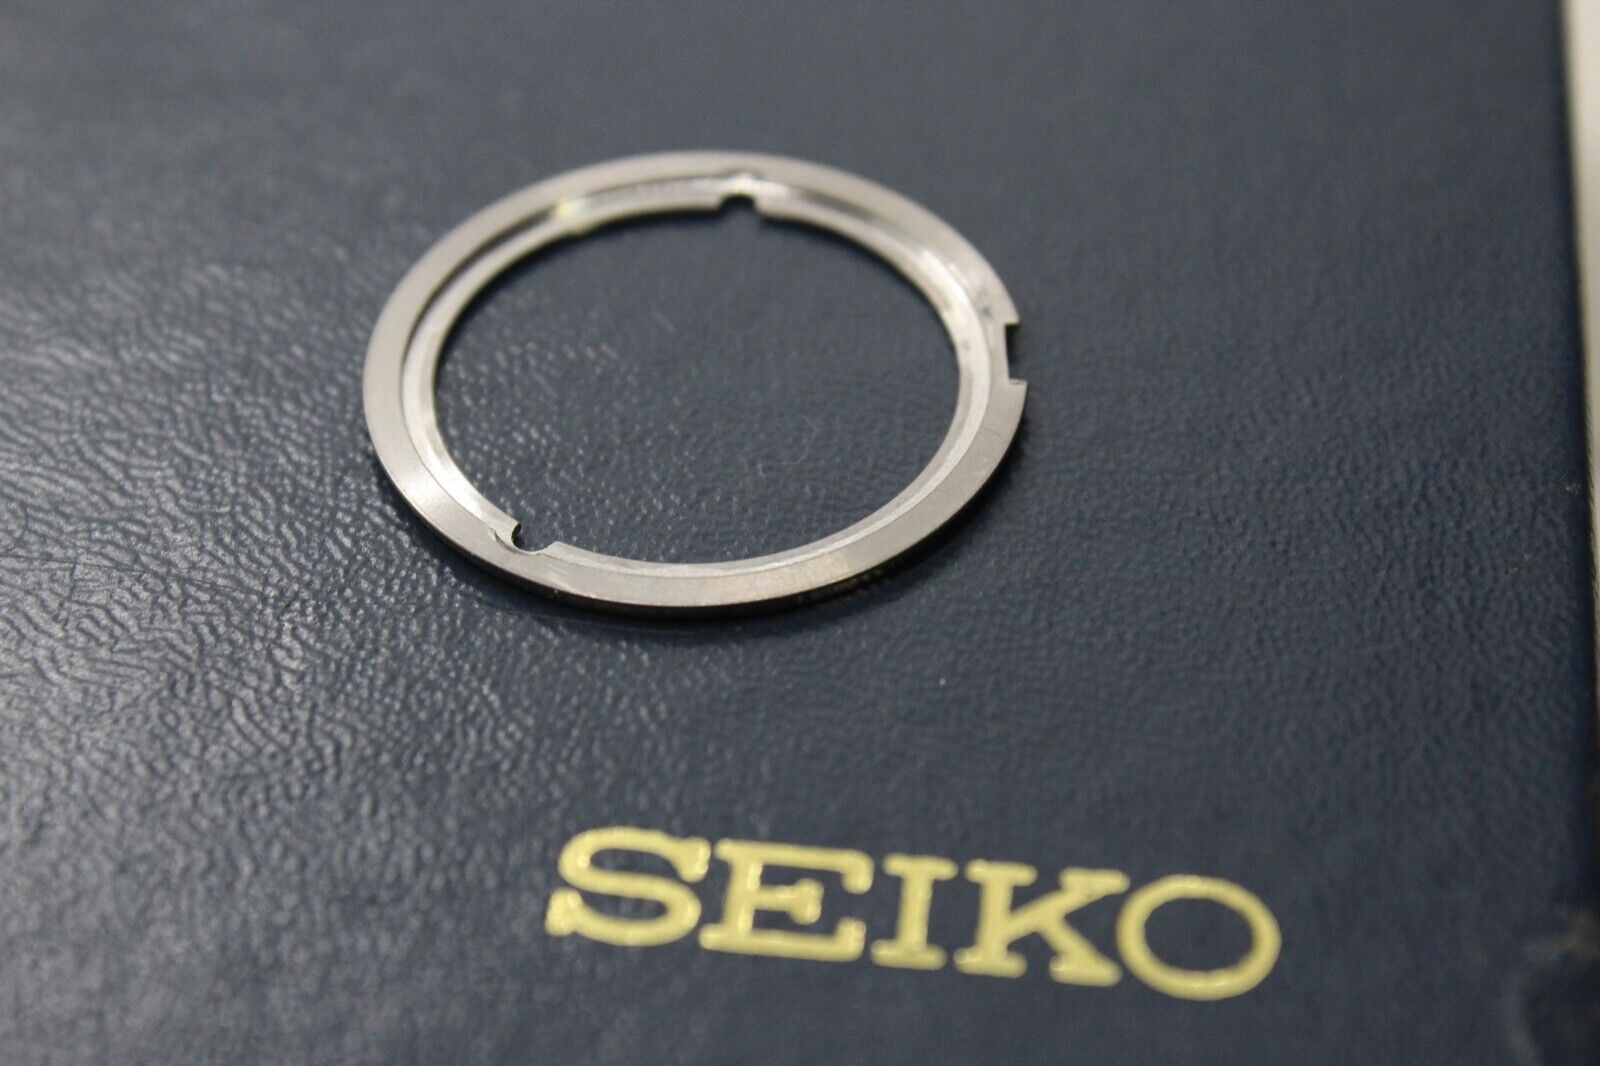 Seiko Movement and Dial Ring for Seiko Kakume 6138-0030 6138-0031 and more